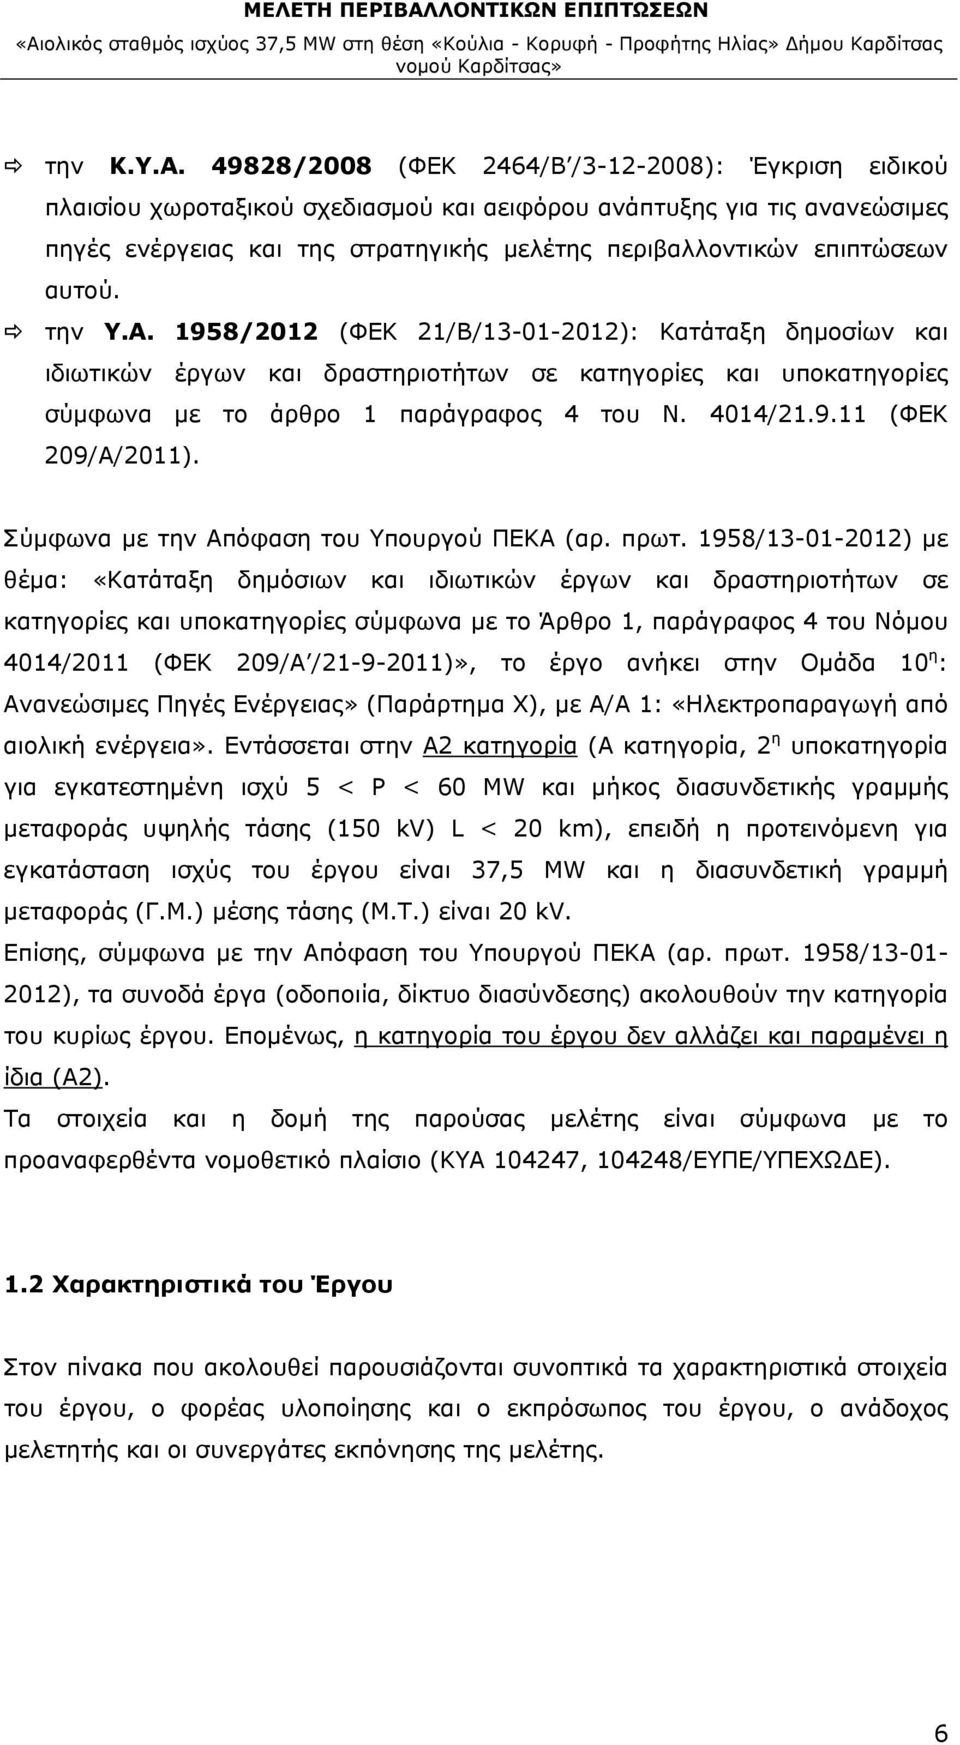 αυτού. την Υ.Α. 1958/2012 (ΦΕΚ 21/Β/13-01-2012): Κατάταξη δημοσίων και ιδιωτικών έργων και δραστηριοτήτων σε κατηγορίες και υποκατηγορίες σύμφωνα με το άρθρο 1 παράγραφος 4 του Ν. 4014/21.9.11 (ΦΕΚ 209/Α/2011).